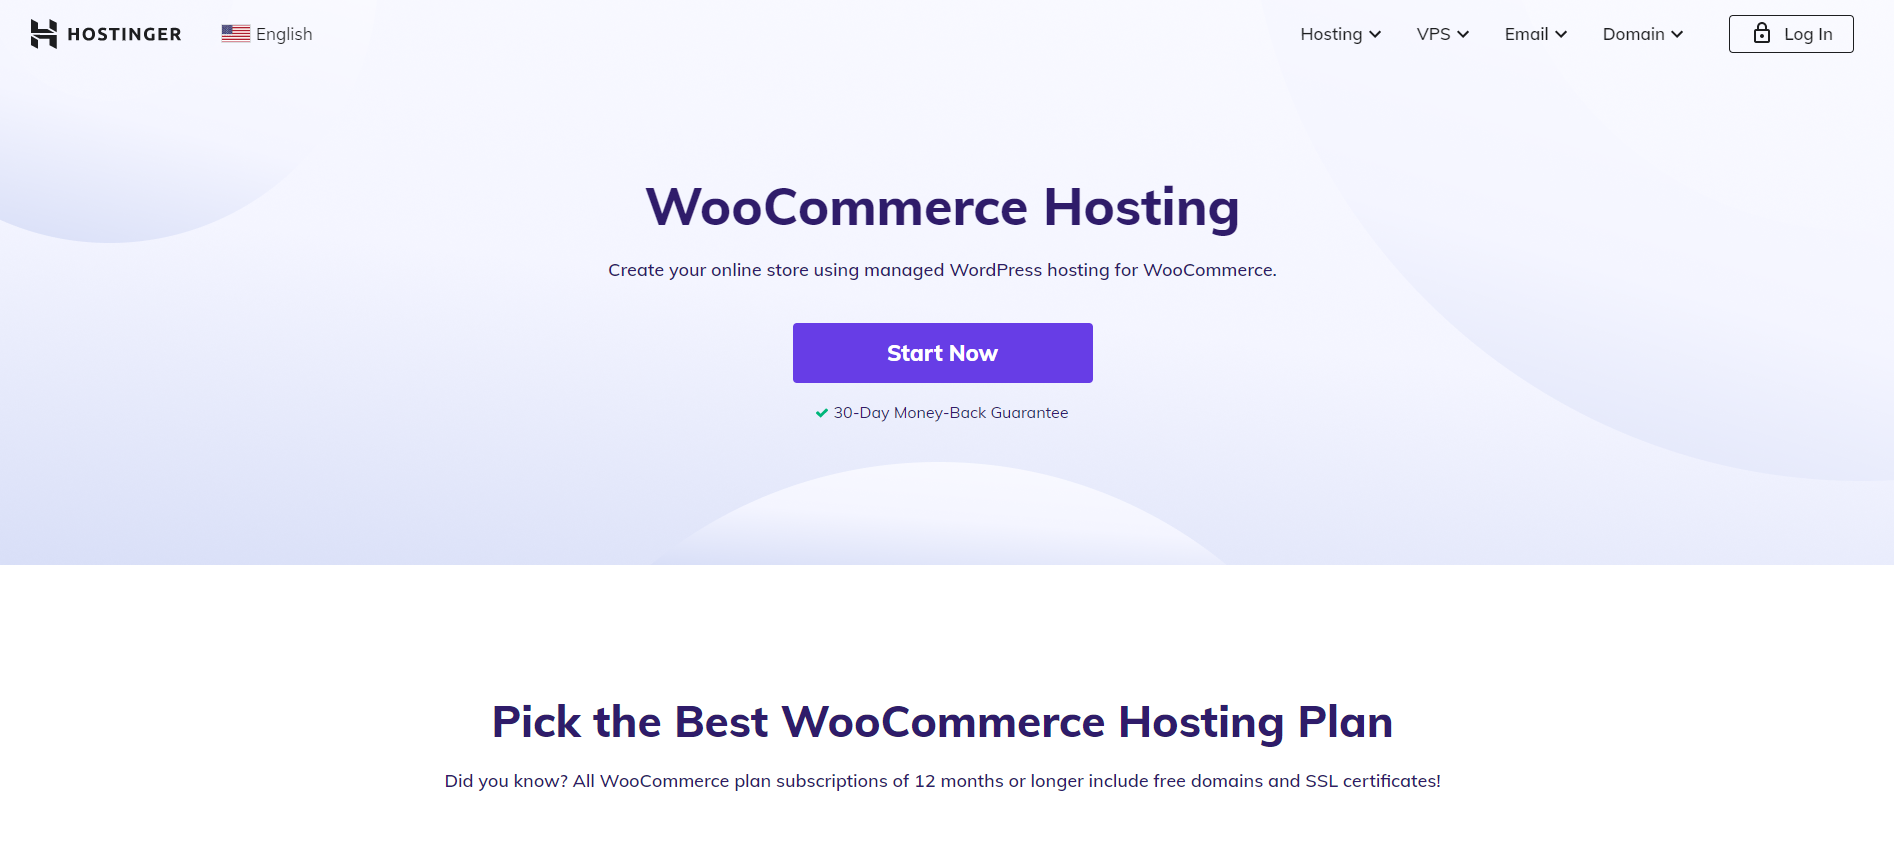 Woocommerce Hosting Provider